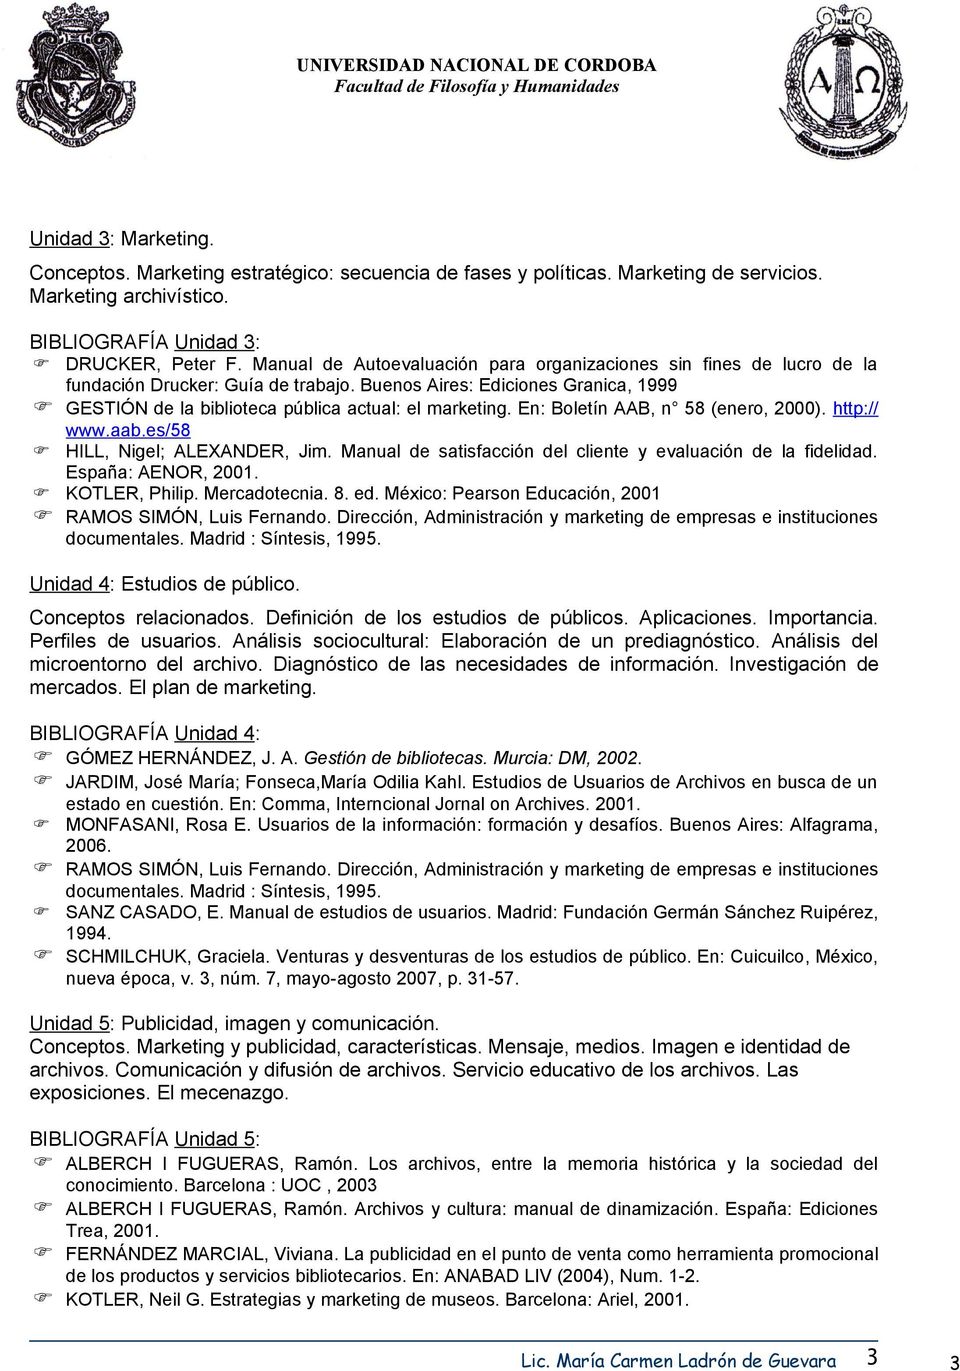 En: Boletín AAB, n 58 (enero, 2000). http:// www.aab.es/58 HILL, Nigel; ALEXANDER, Jim. Manual de satisfacción del cliente y evaluación de la fidelidad. España: AENOR, 2001. KOTLER, Philip.